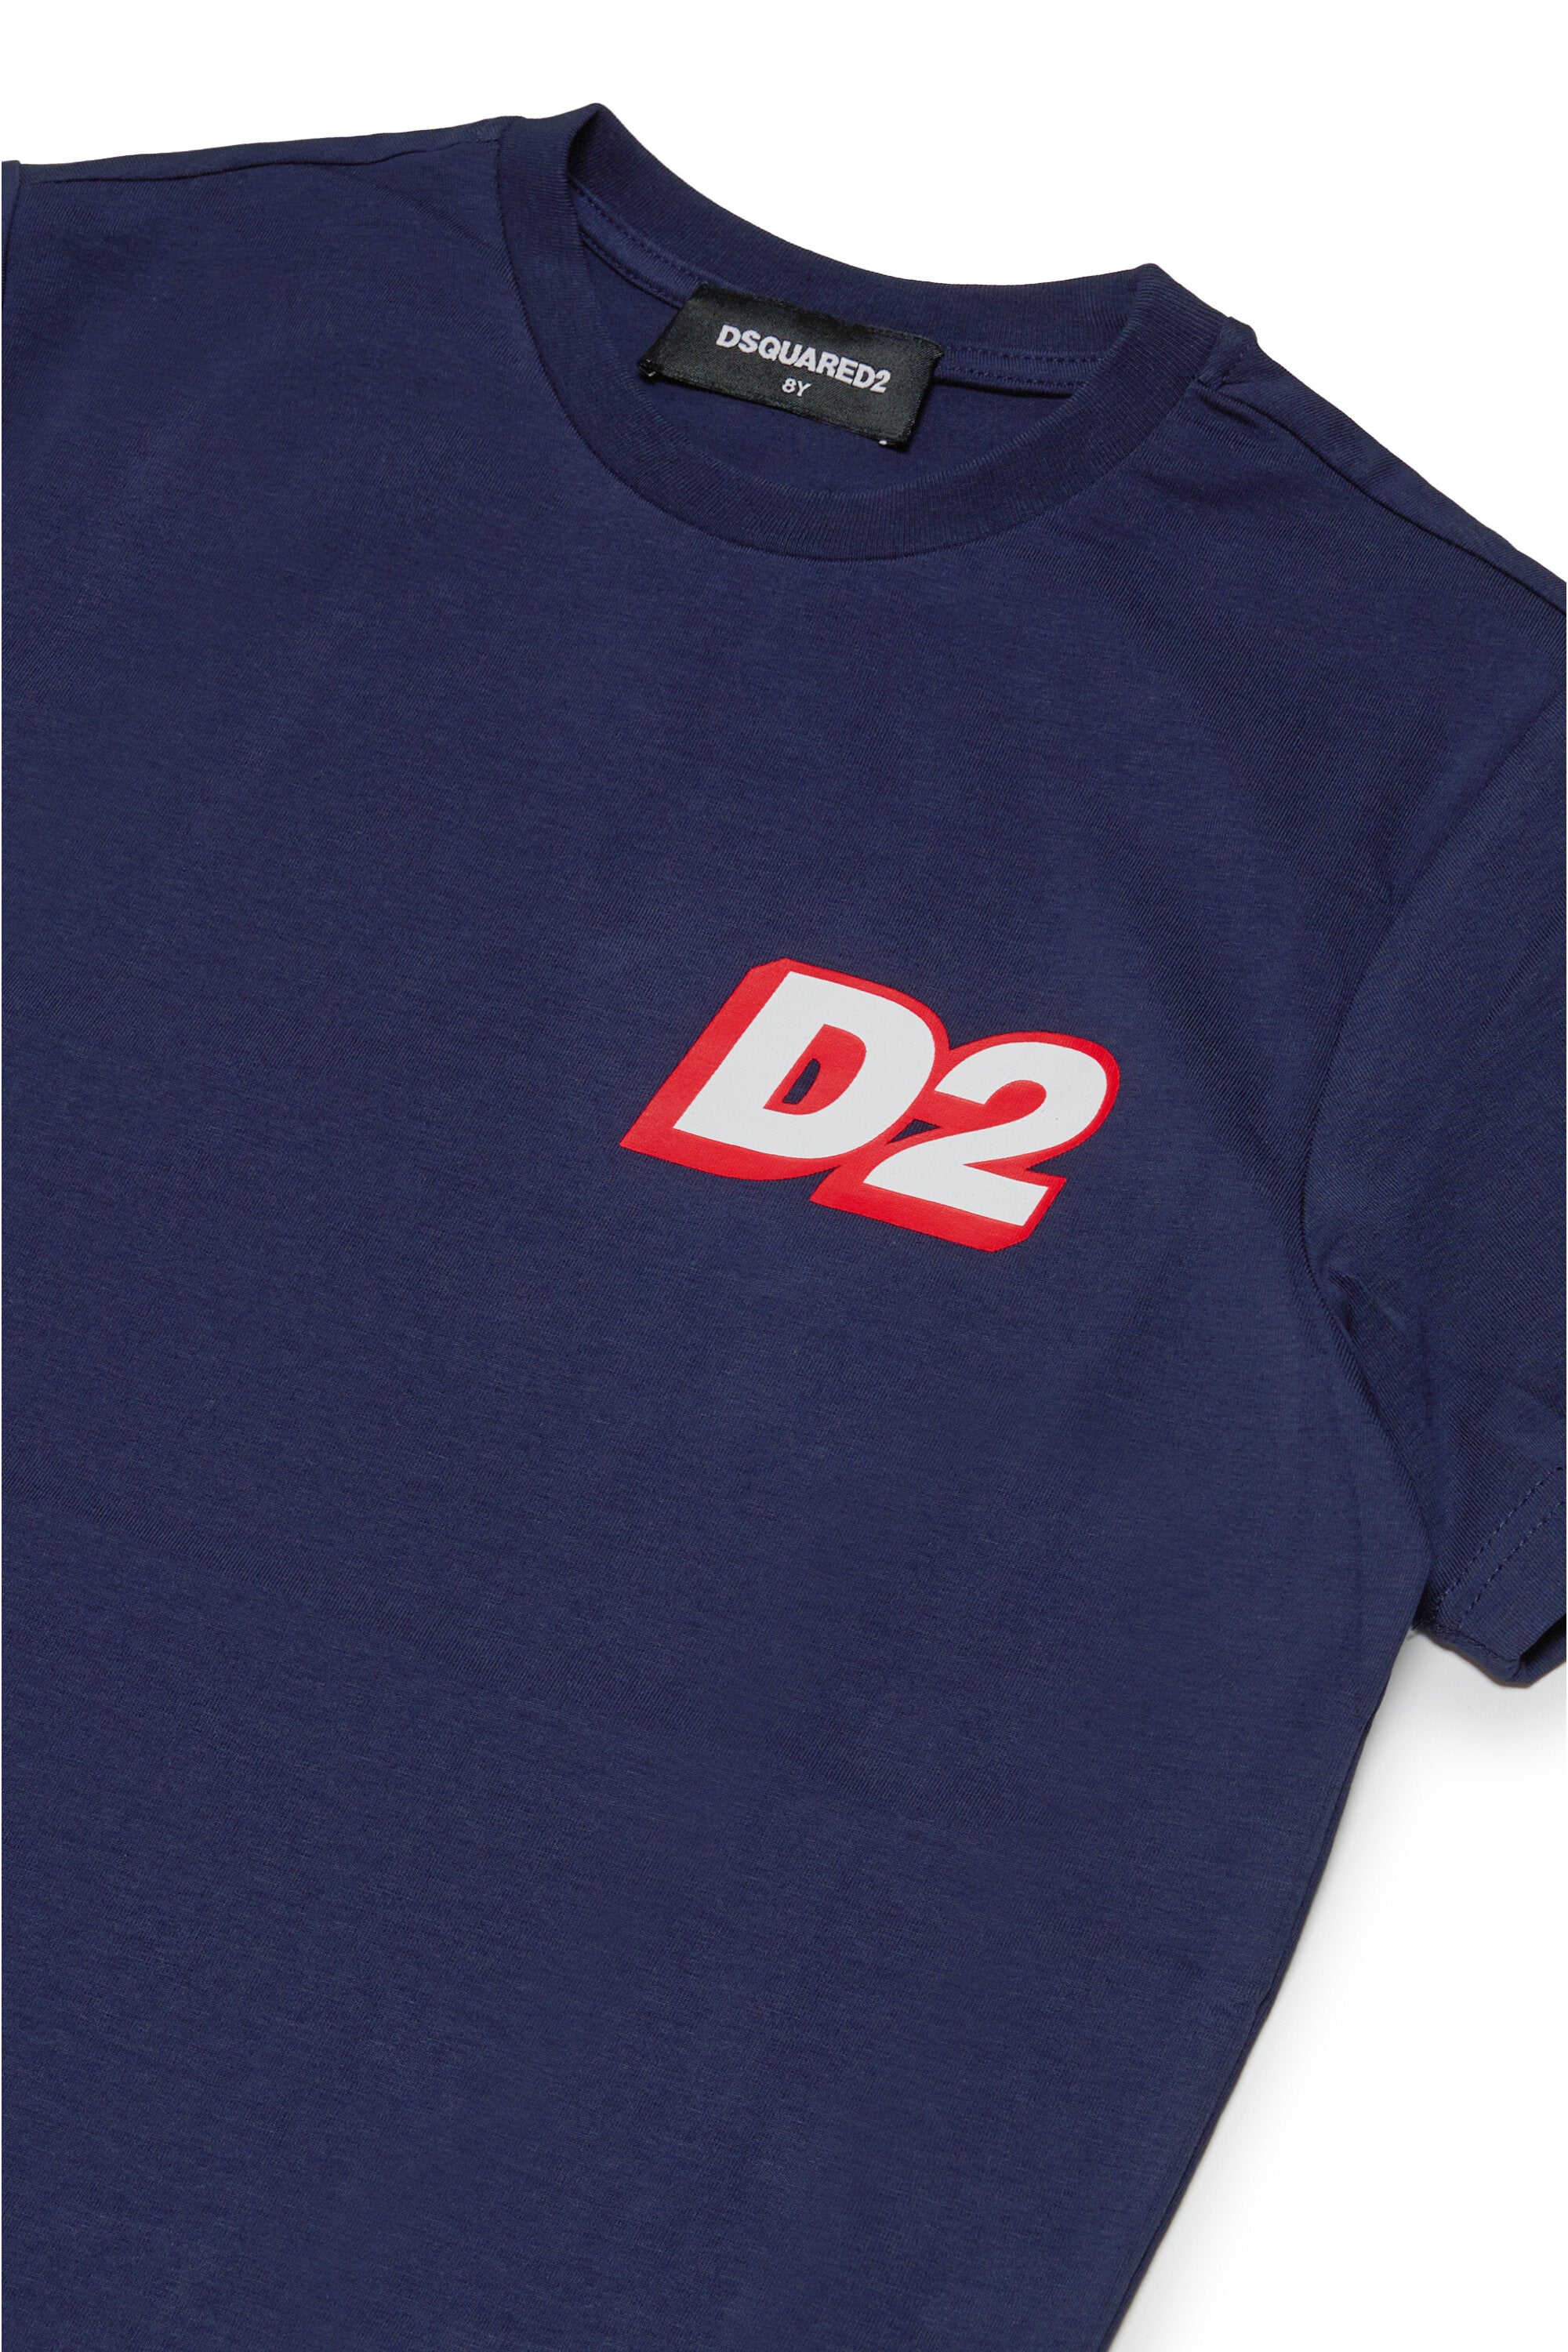 Jersey loungewear t-shirt with D2 logo